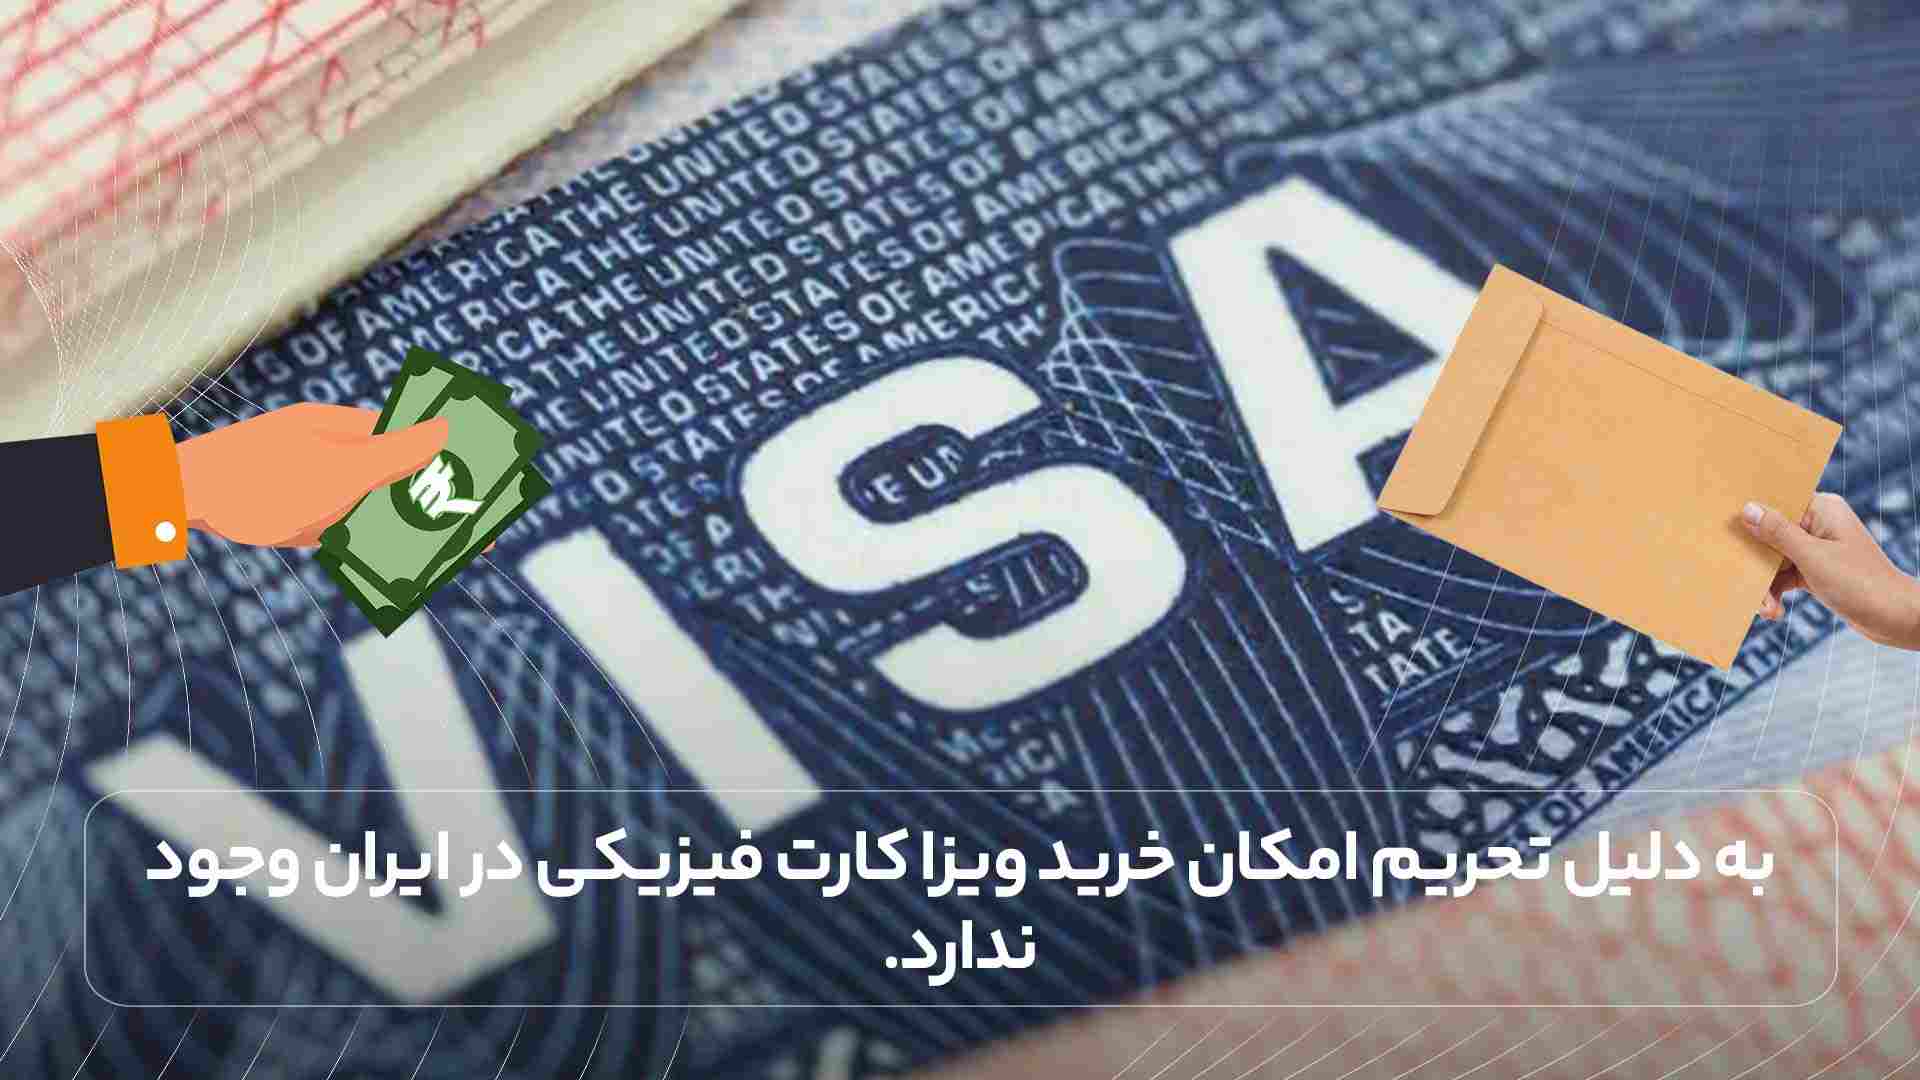 به دلیل تحریم امکان خرید ویزا کارت فیزیکی در ایران وجود ندارد